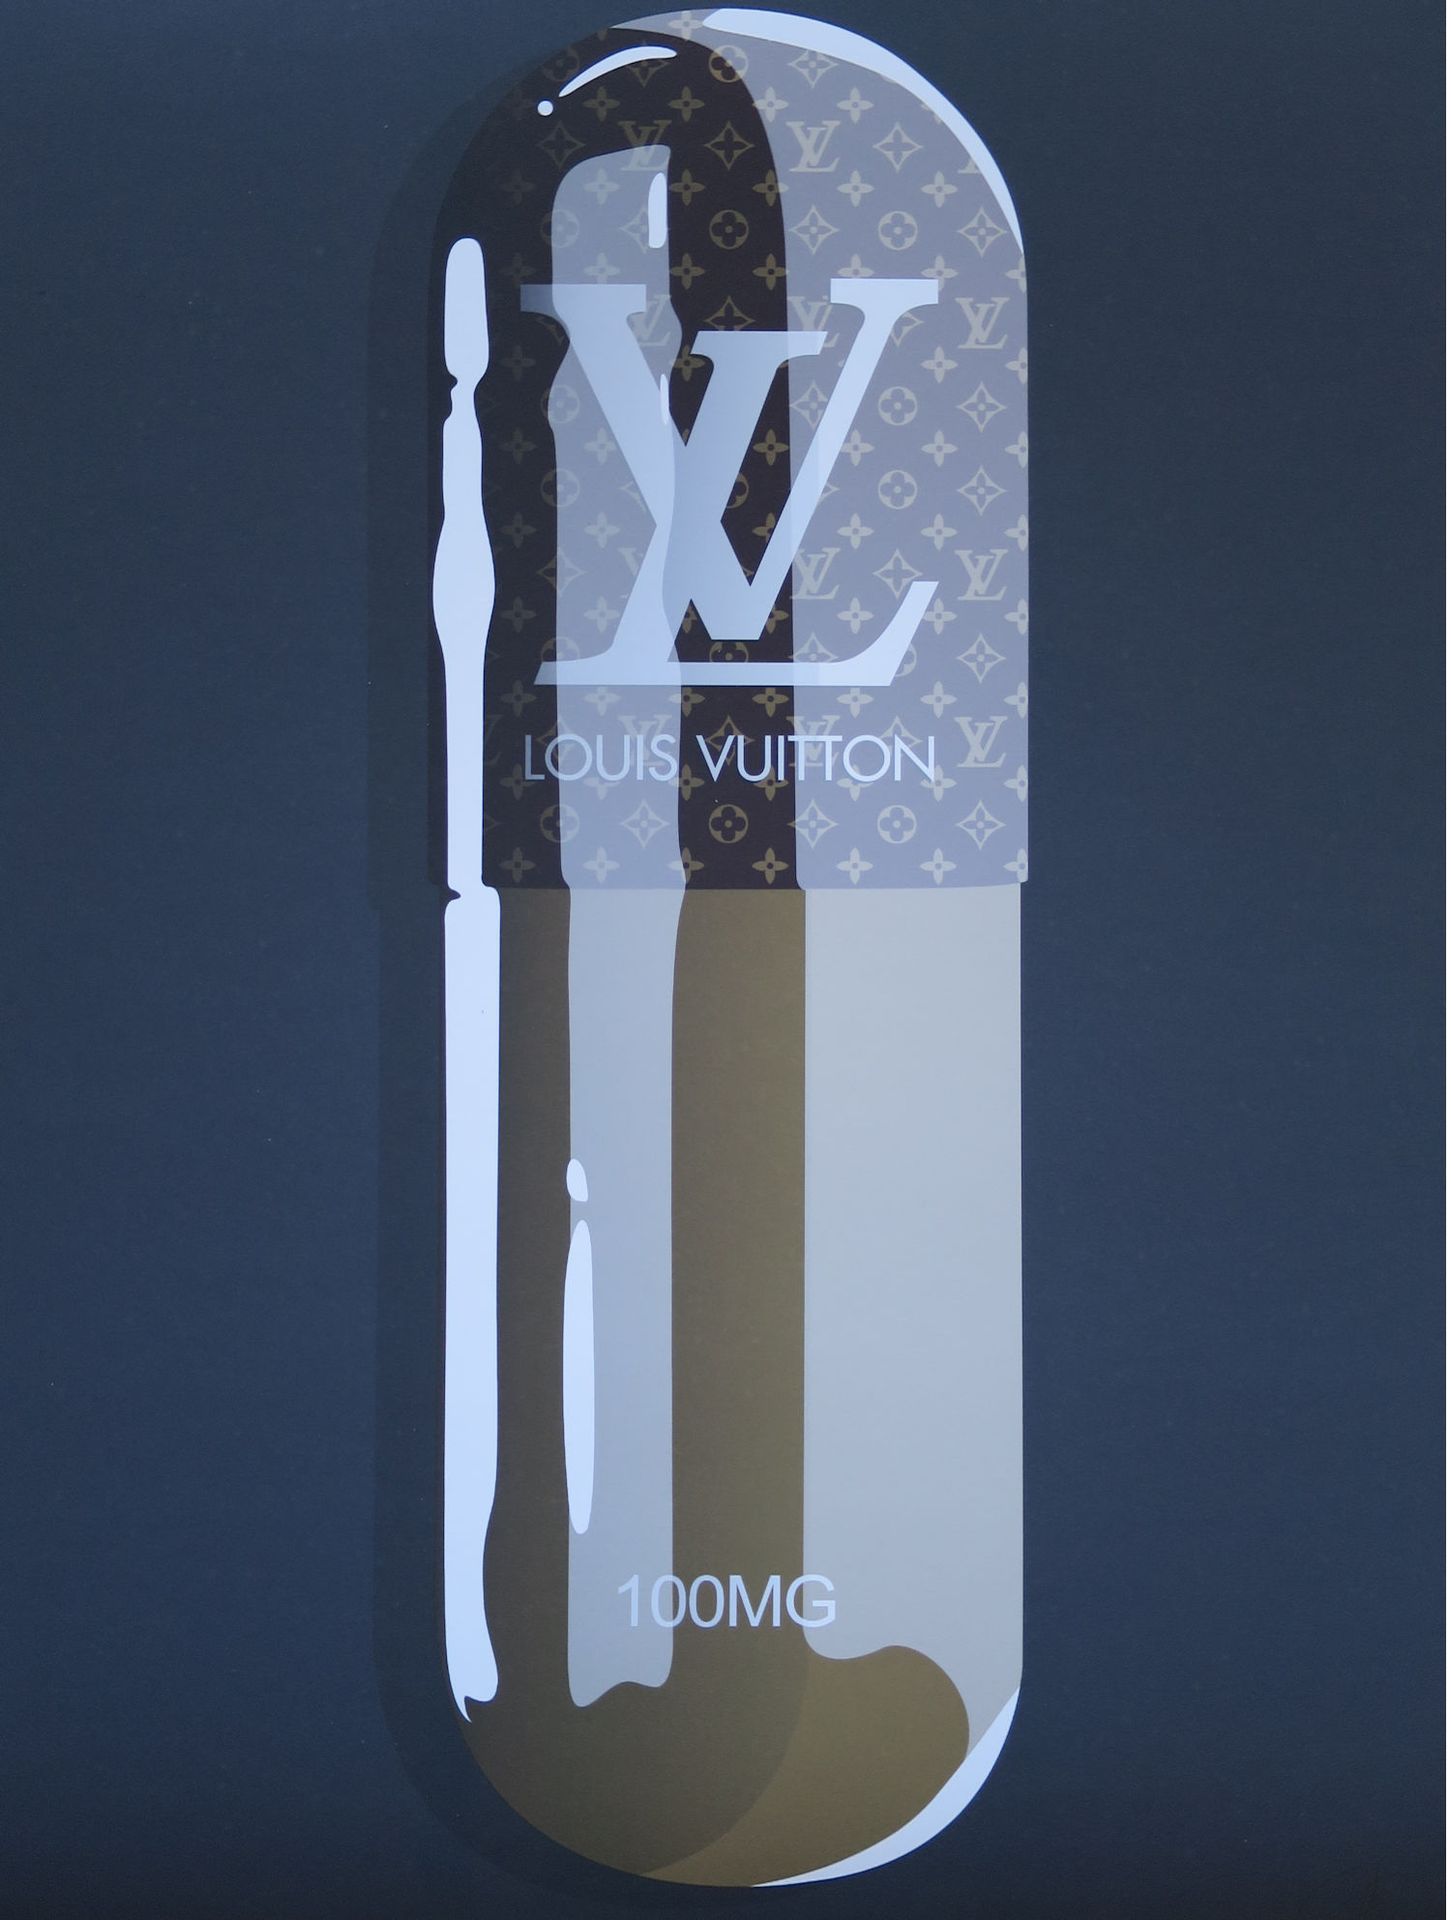 DENIAL DENUNCIA

Louis Vuitton, 2019

Litografia firmata e numerata /100 copie

&hellip;